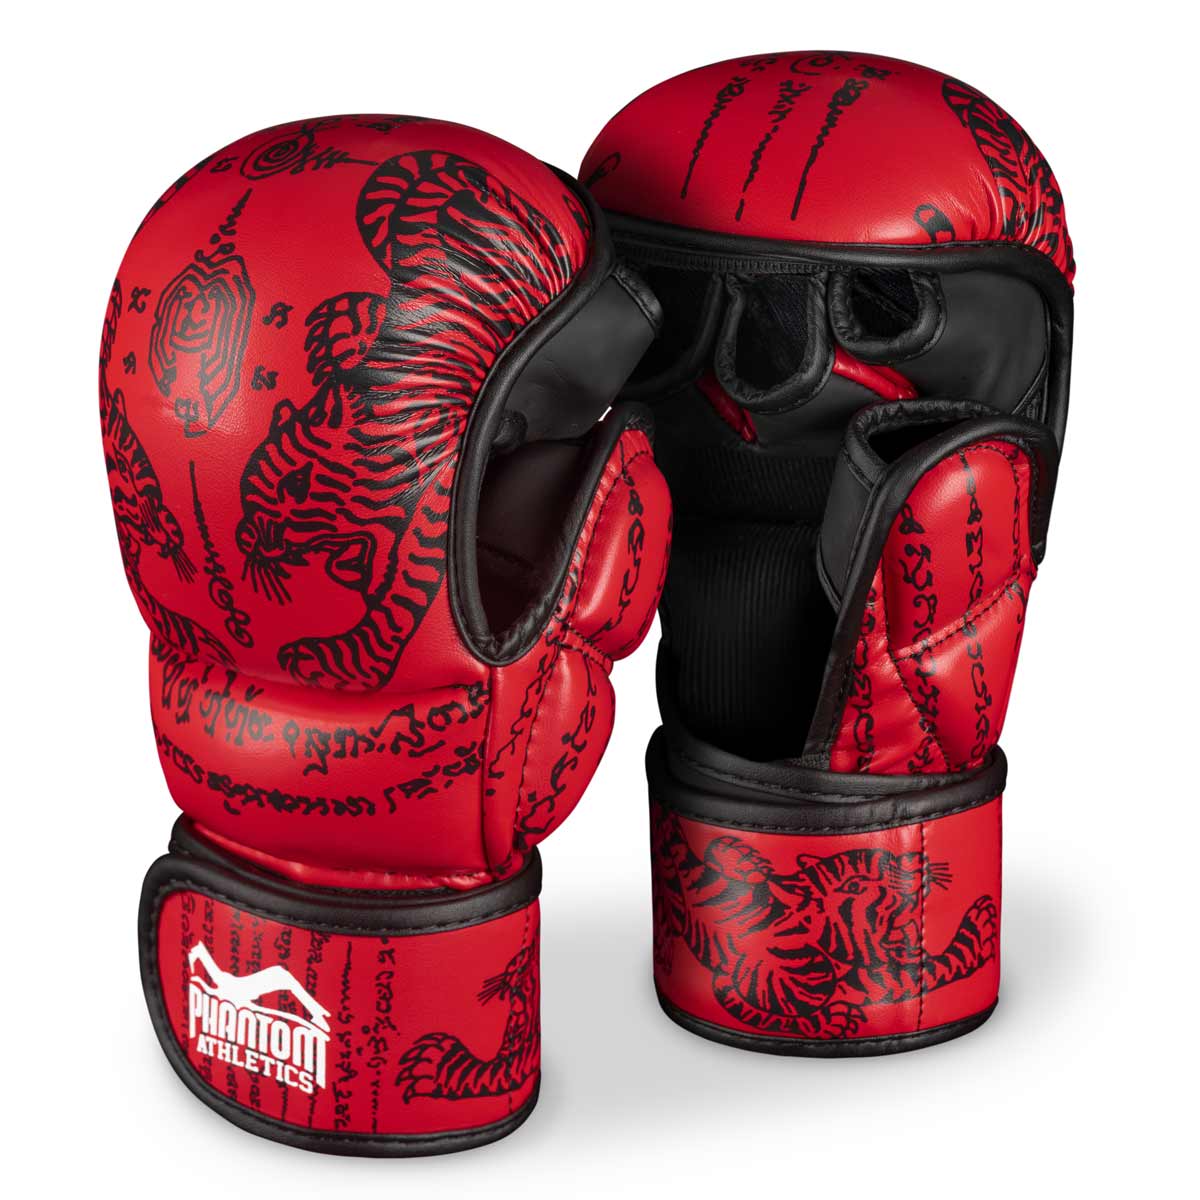 Phantom Muay Thai kindad Tai poksi ja MMA sparringuks, võistluseks ja treeninguks. Traditsioonilise Sak Yant disaini ja punase värviga.